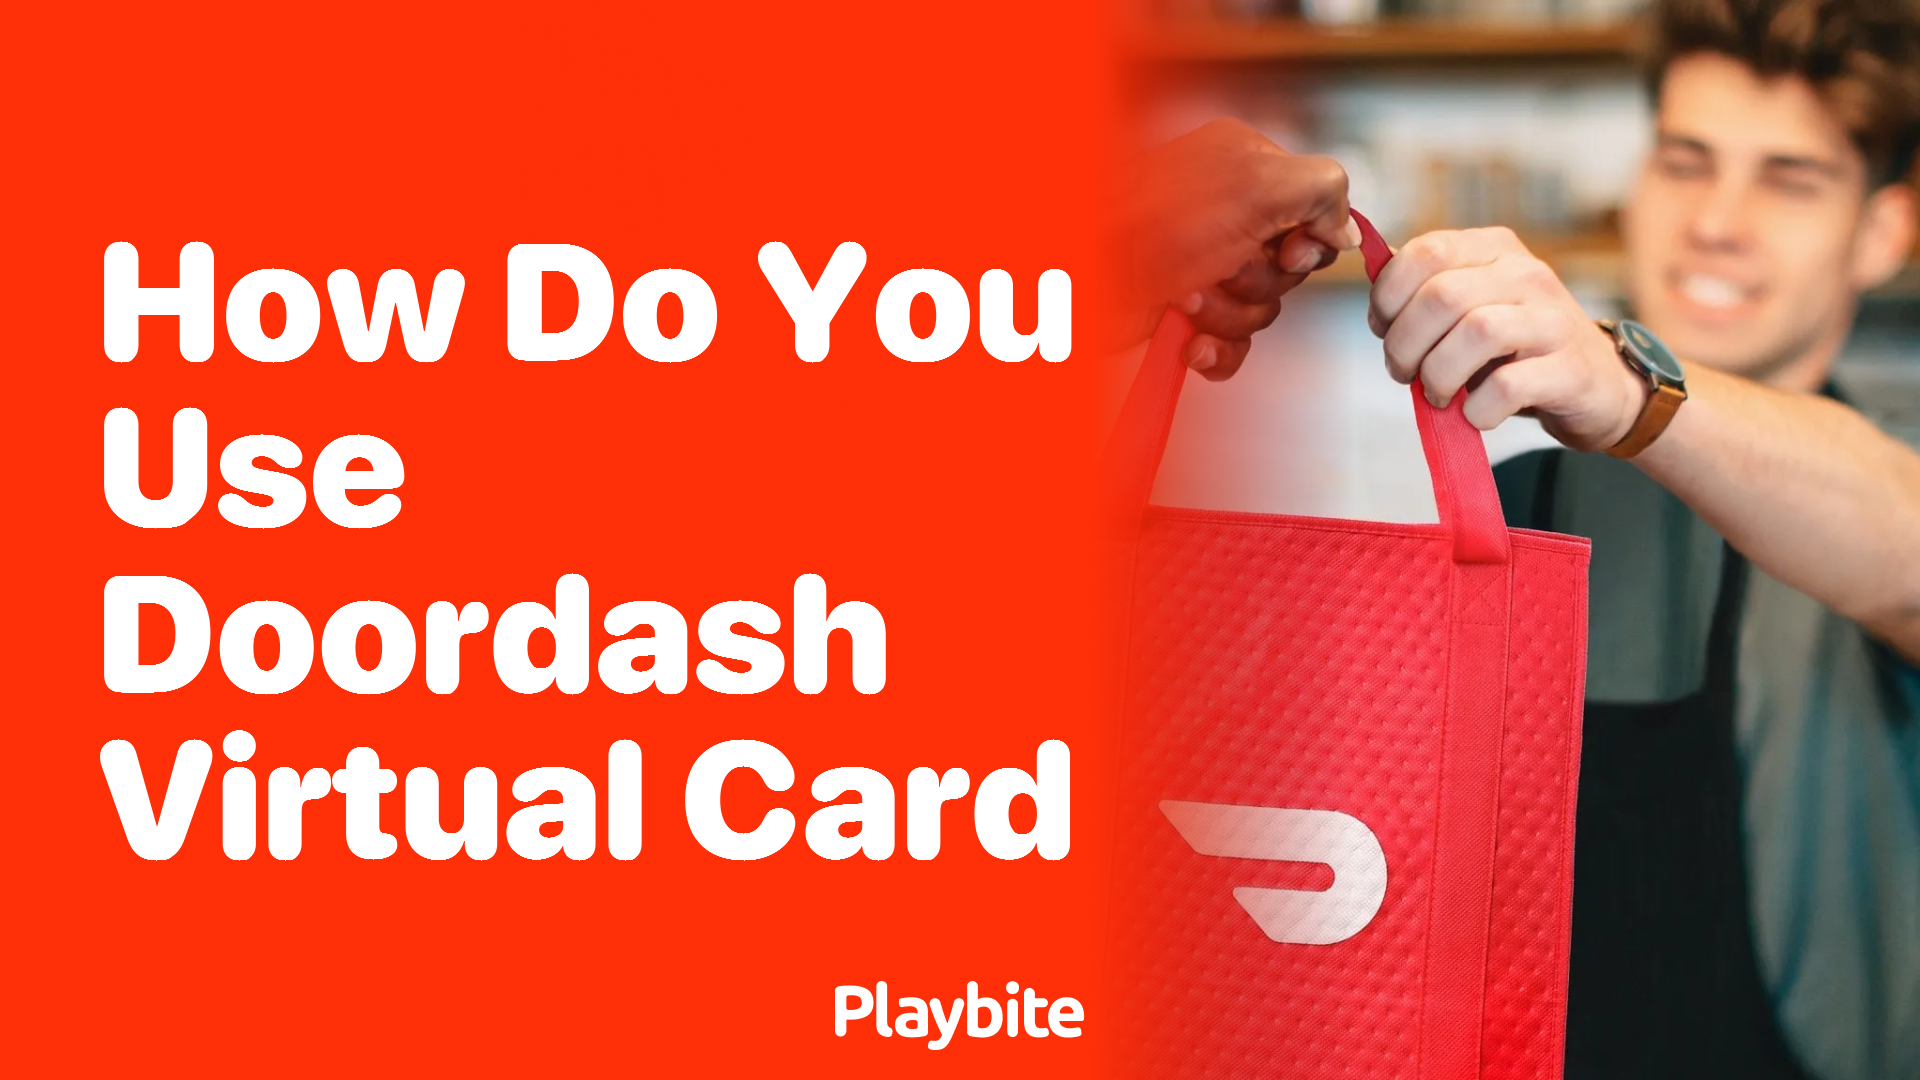 How do you use a DoorDash virtual card?